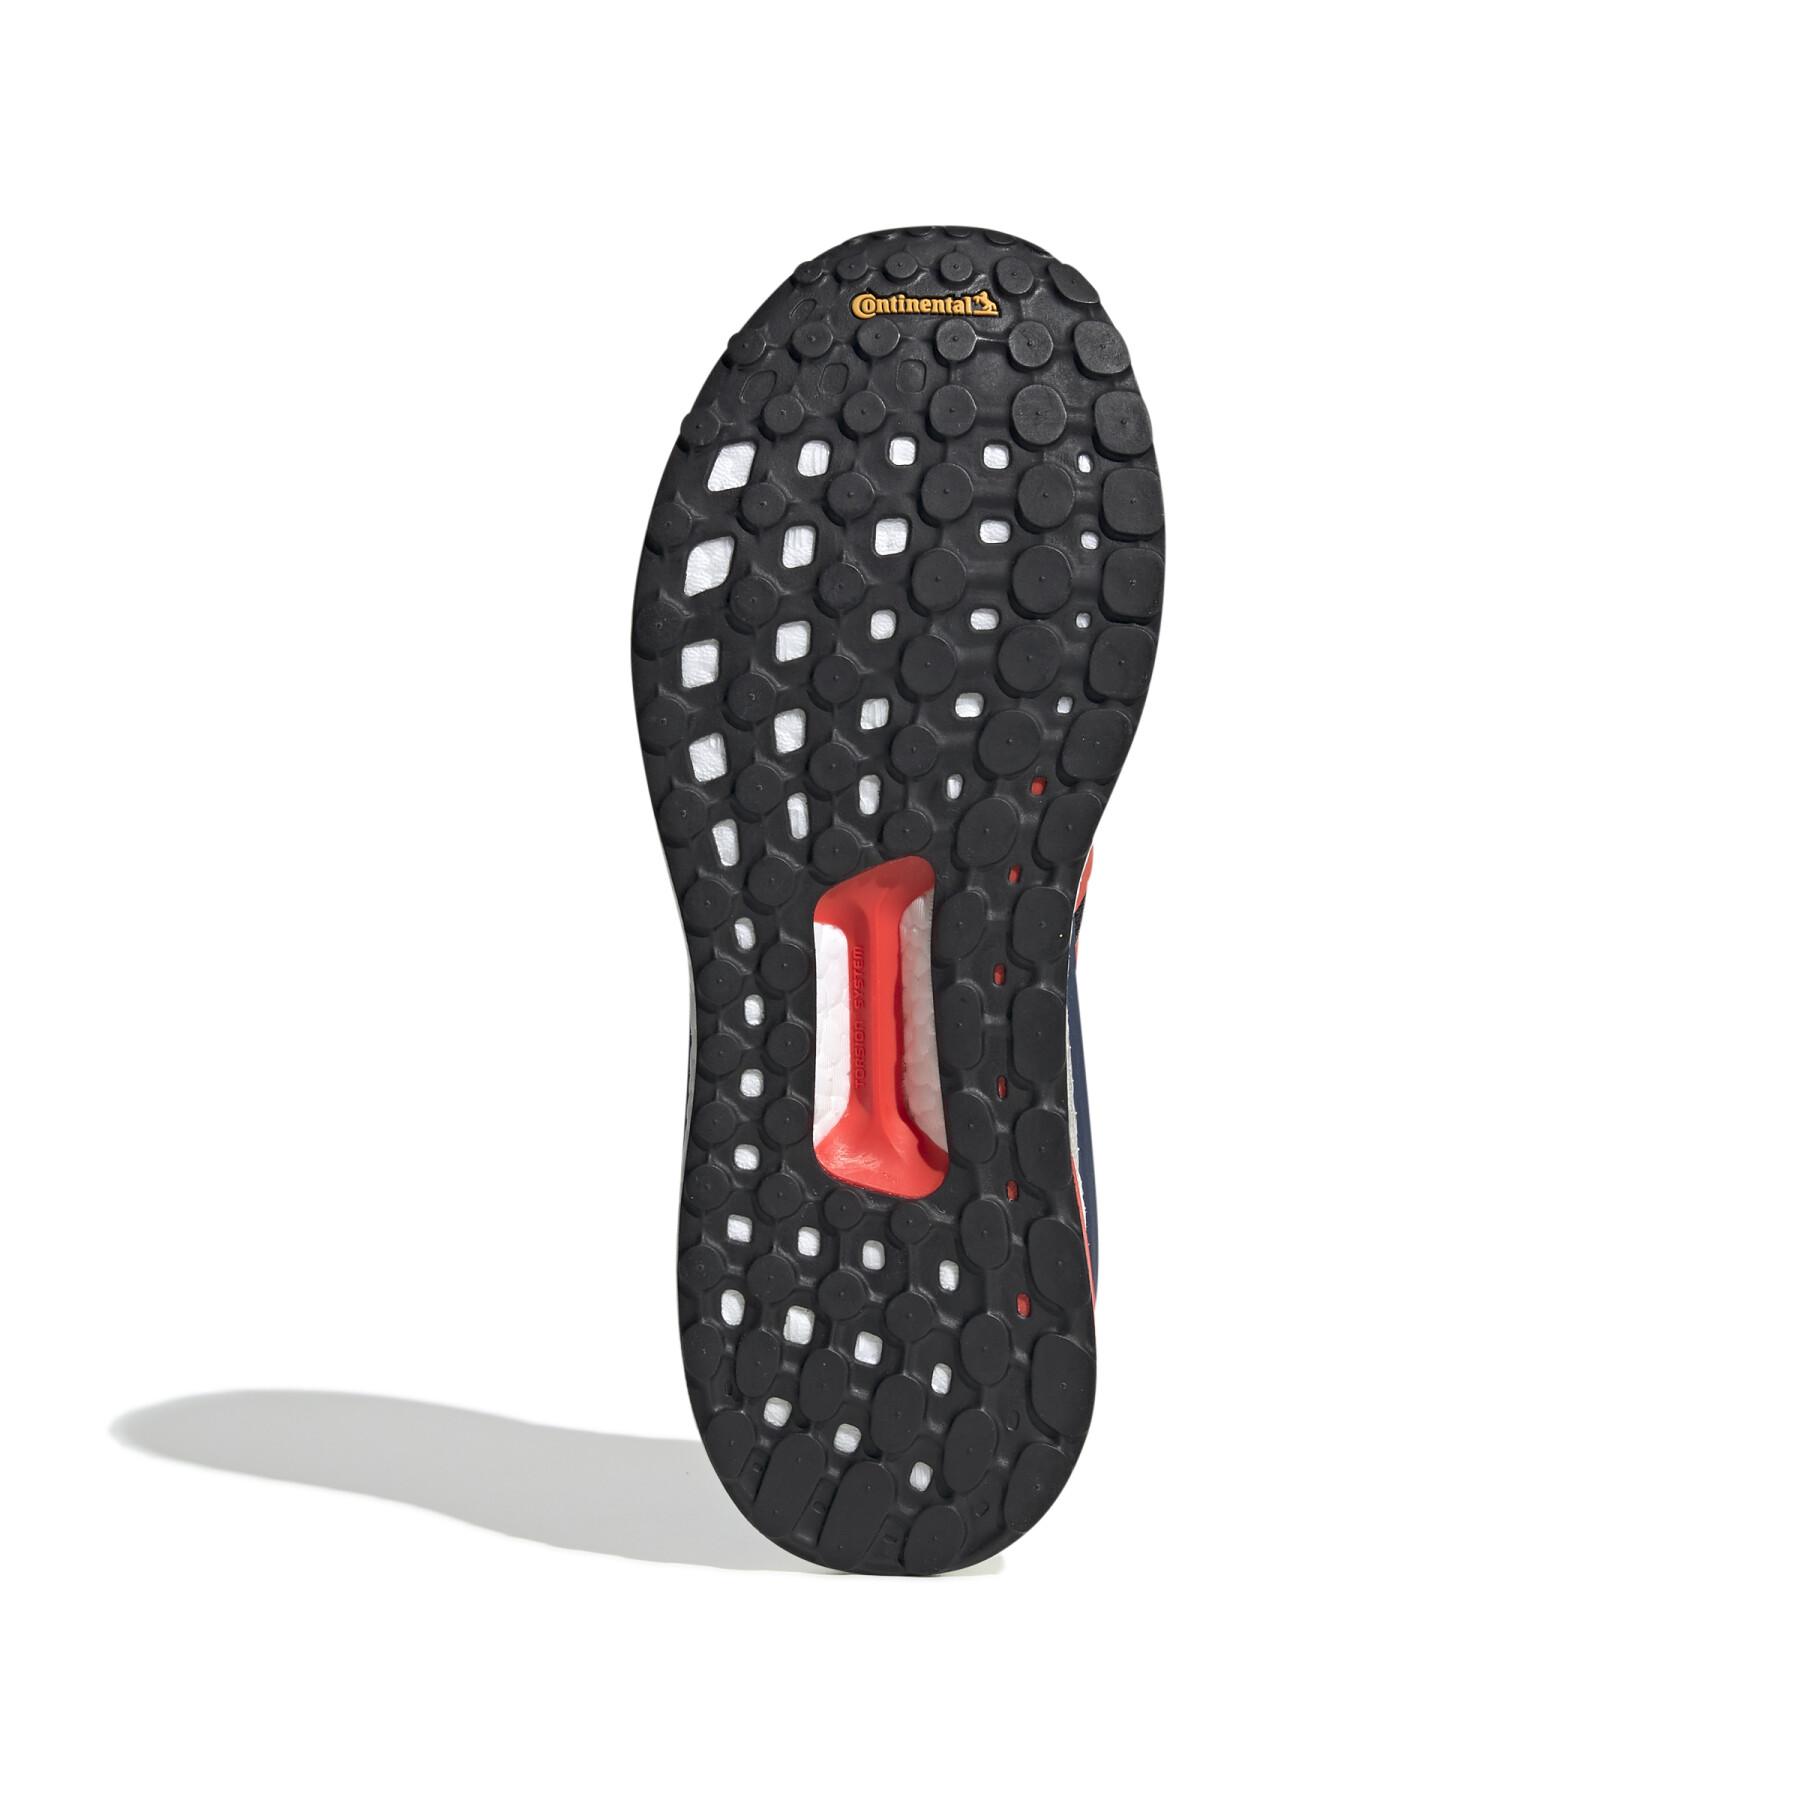 Chaussures de running adidas Solar Glide ST 19